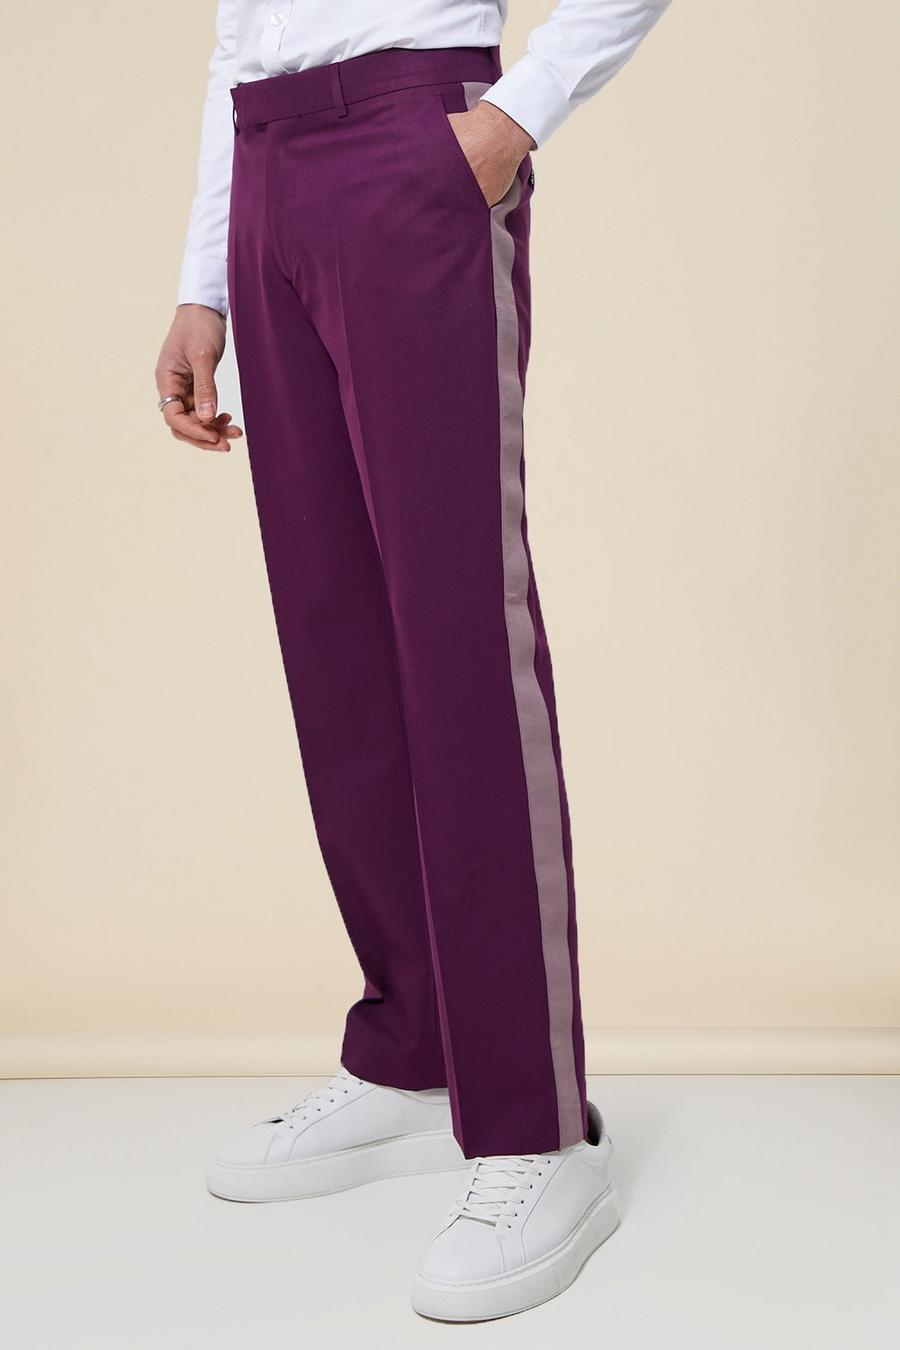 Lockere gespleißte Anzugjacke, Purple violet